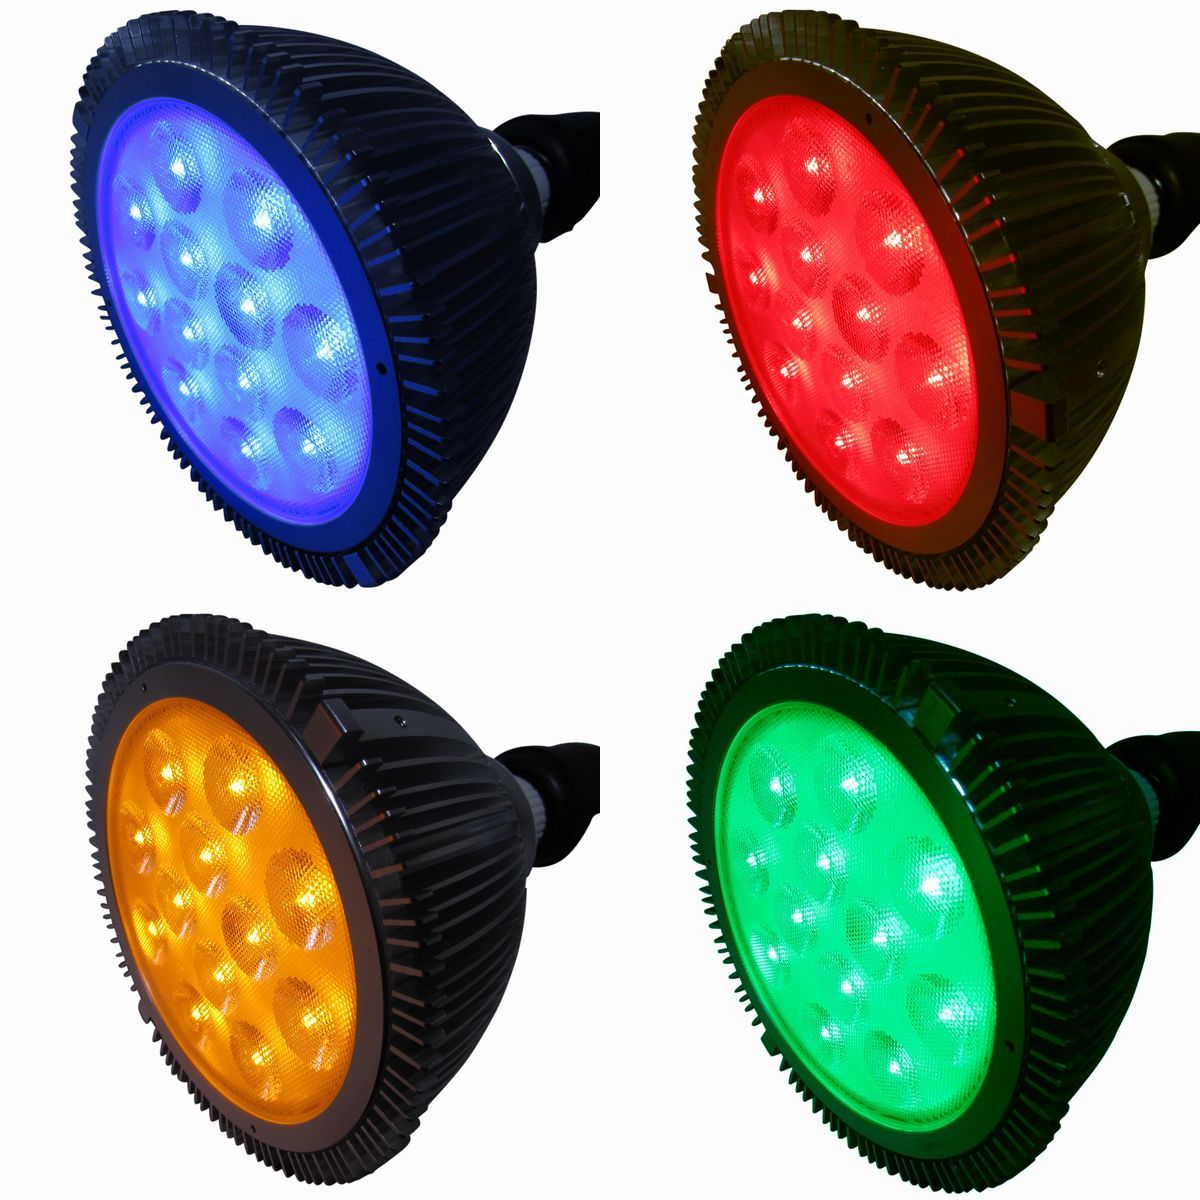 LED電球 ご予約品 LED青 限定タイムセール LED赤 LED黄 LED緑 LEDビーム球 ハイビーム あす楽対応 Ｅ26口金 ビームランプ4色から ビームライト型 LEDカラー電球 24ワット高照度タイプ 防水